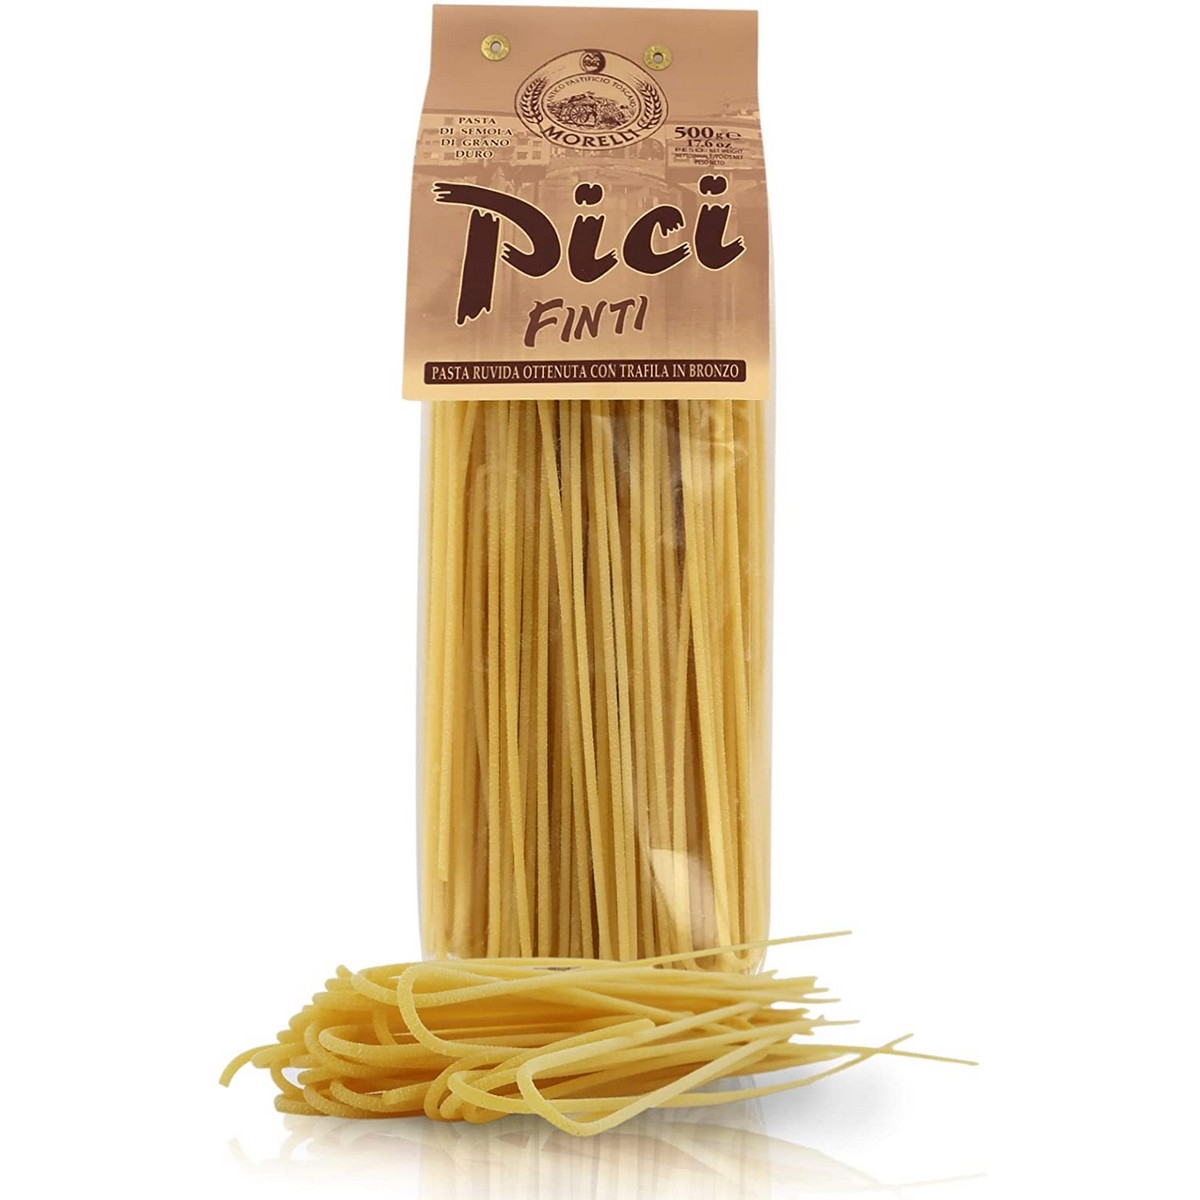 Antico pastificio morelli - Especialidades regionales - Pici Dritti - 500 g